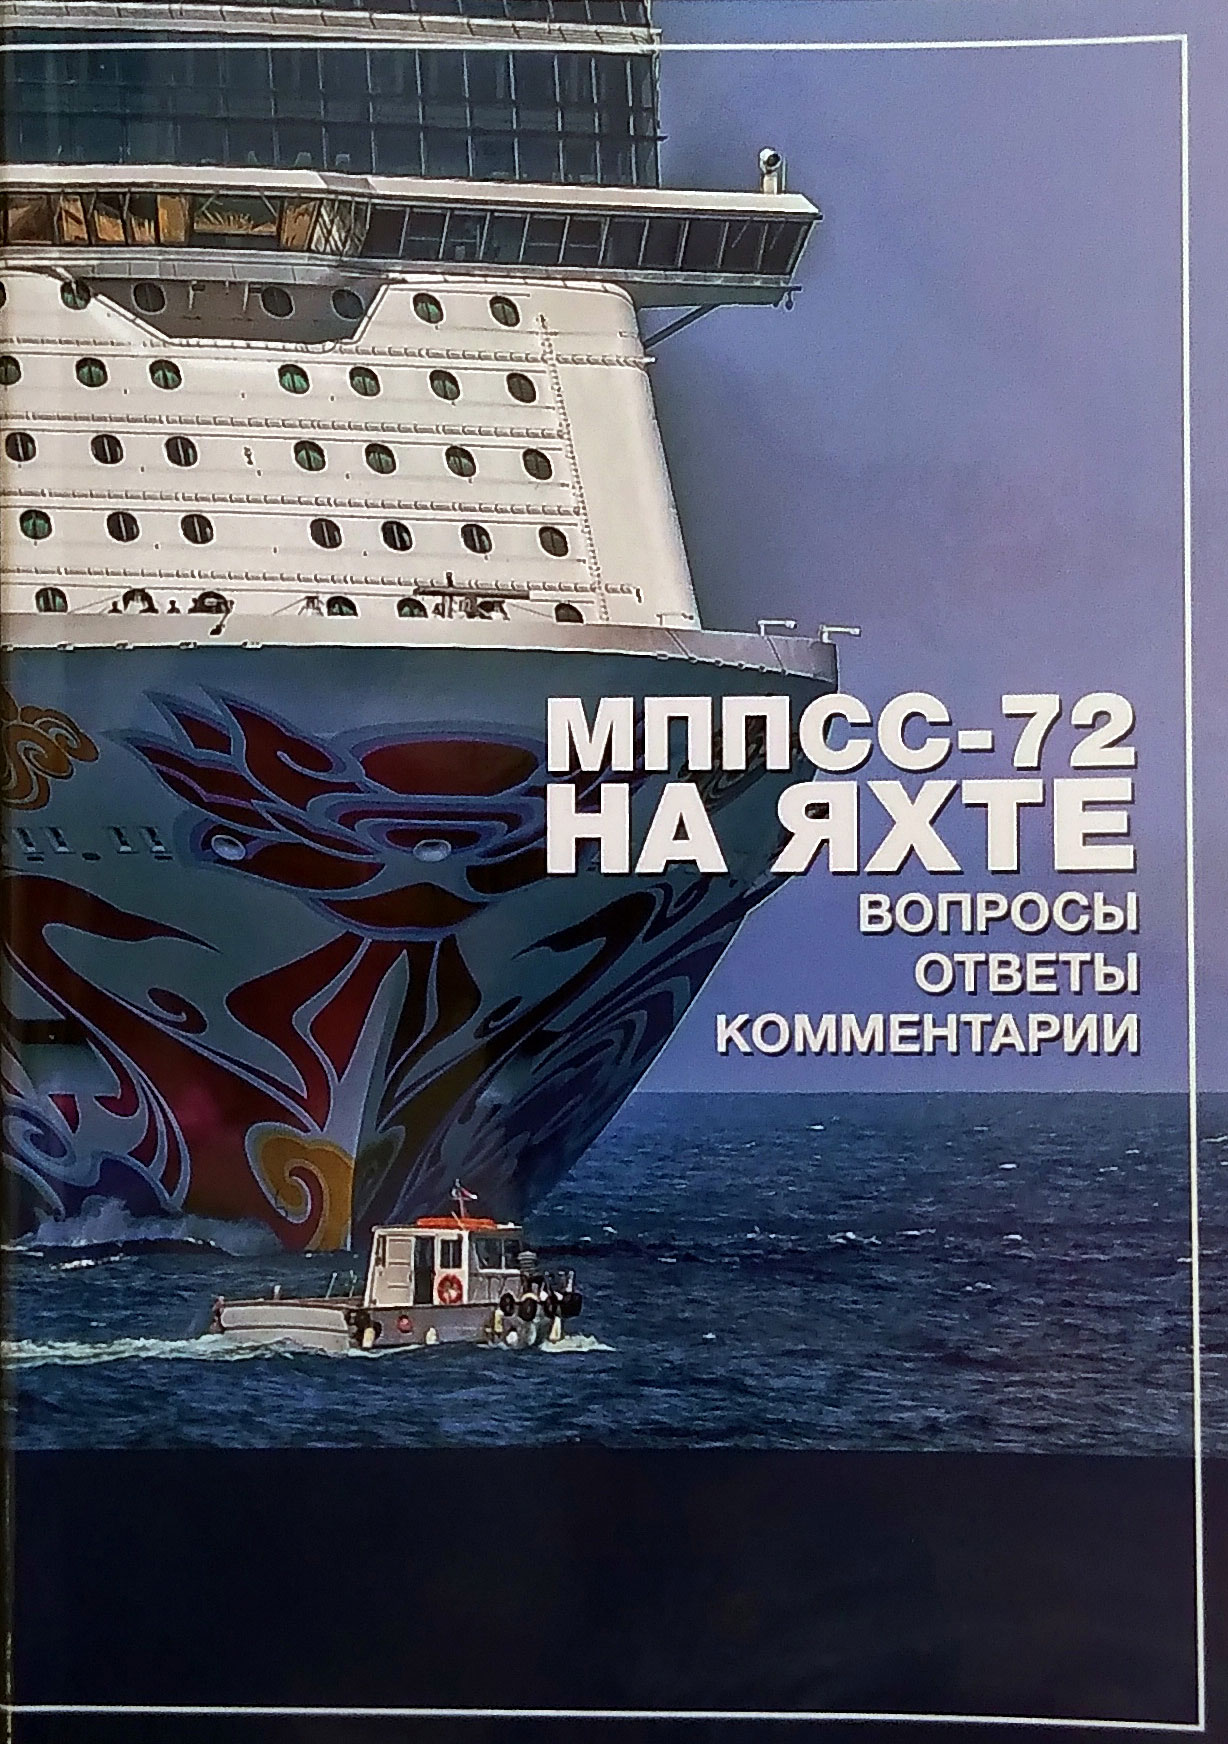 МППСС-72 на яхте в вопросах и ответах с комментариями